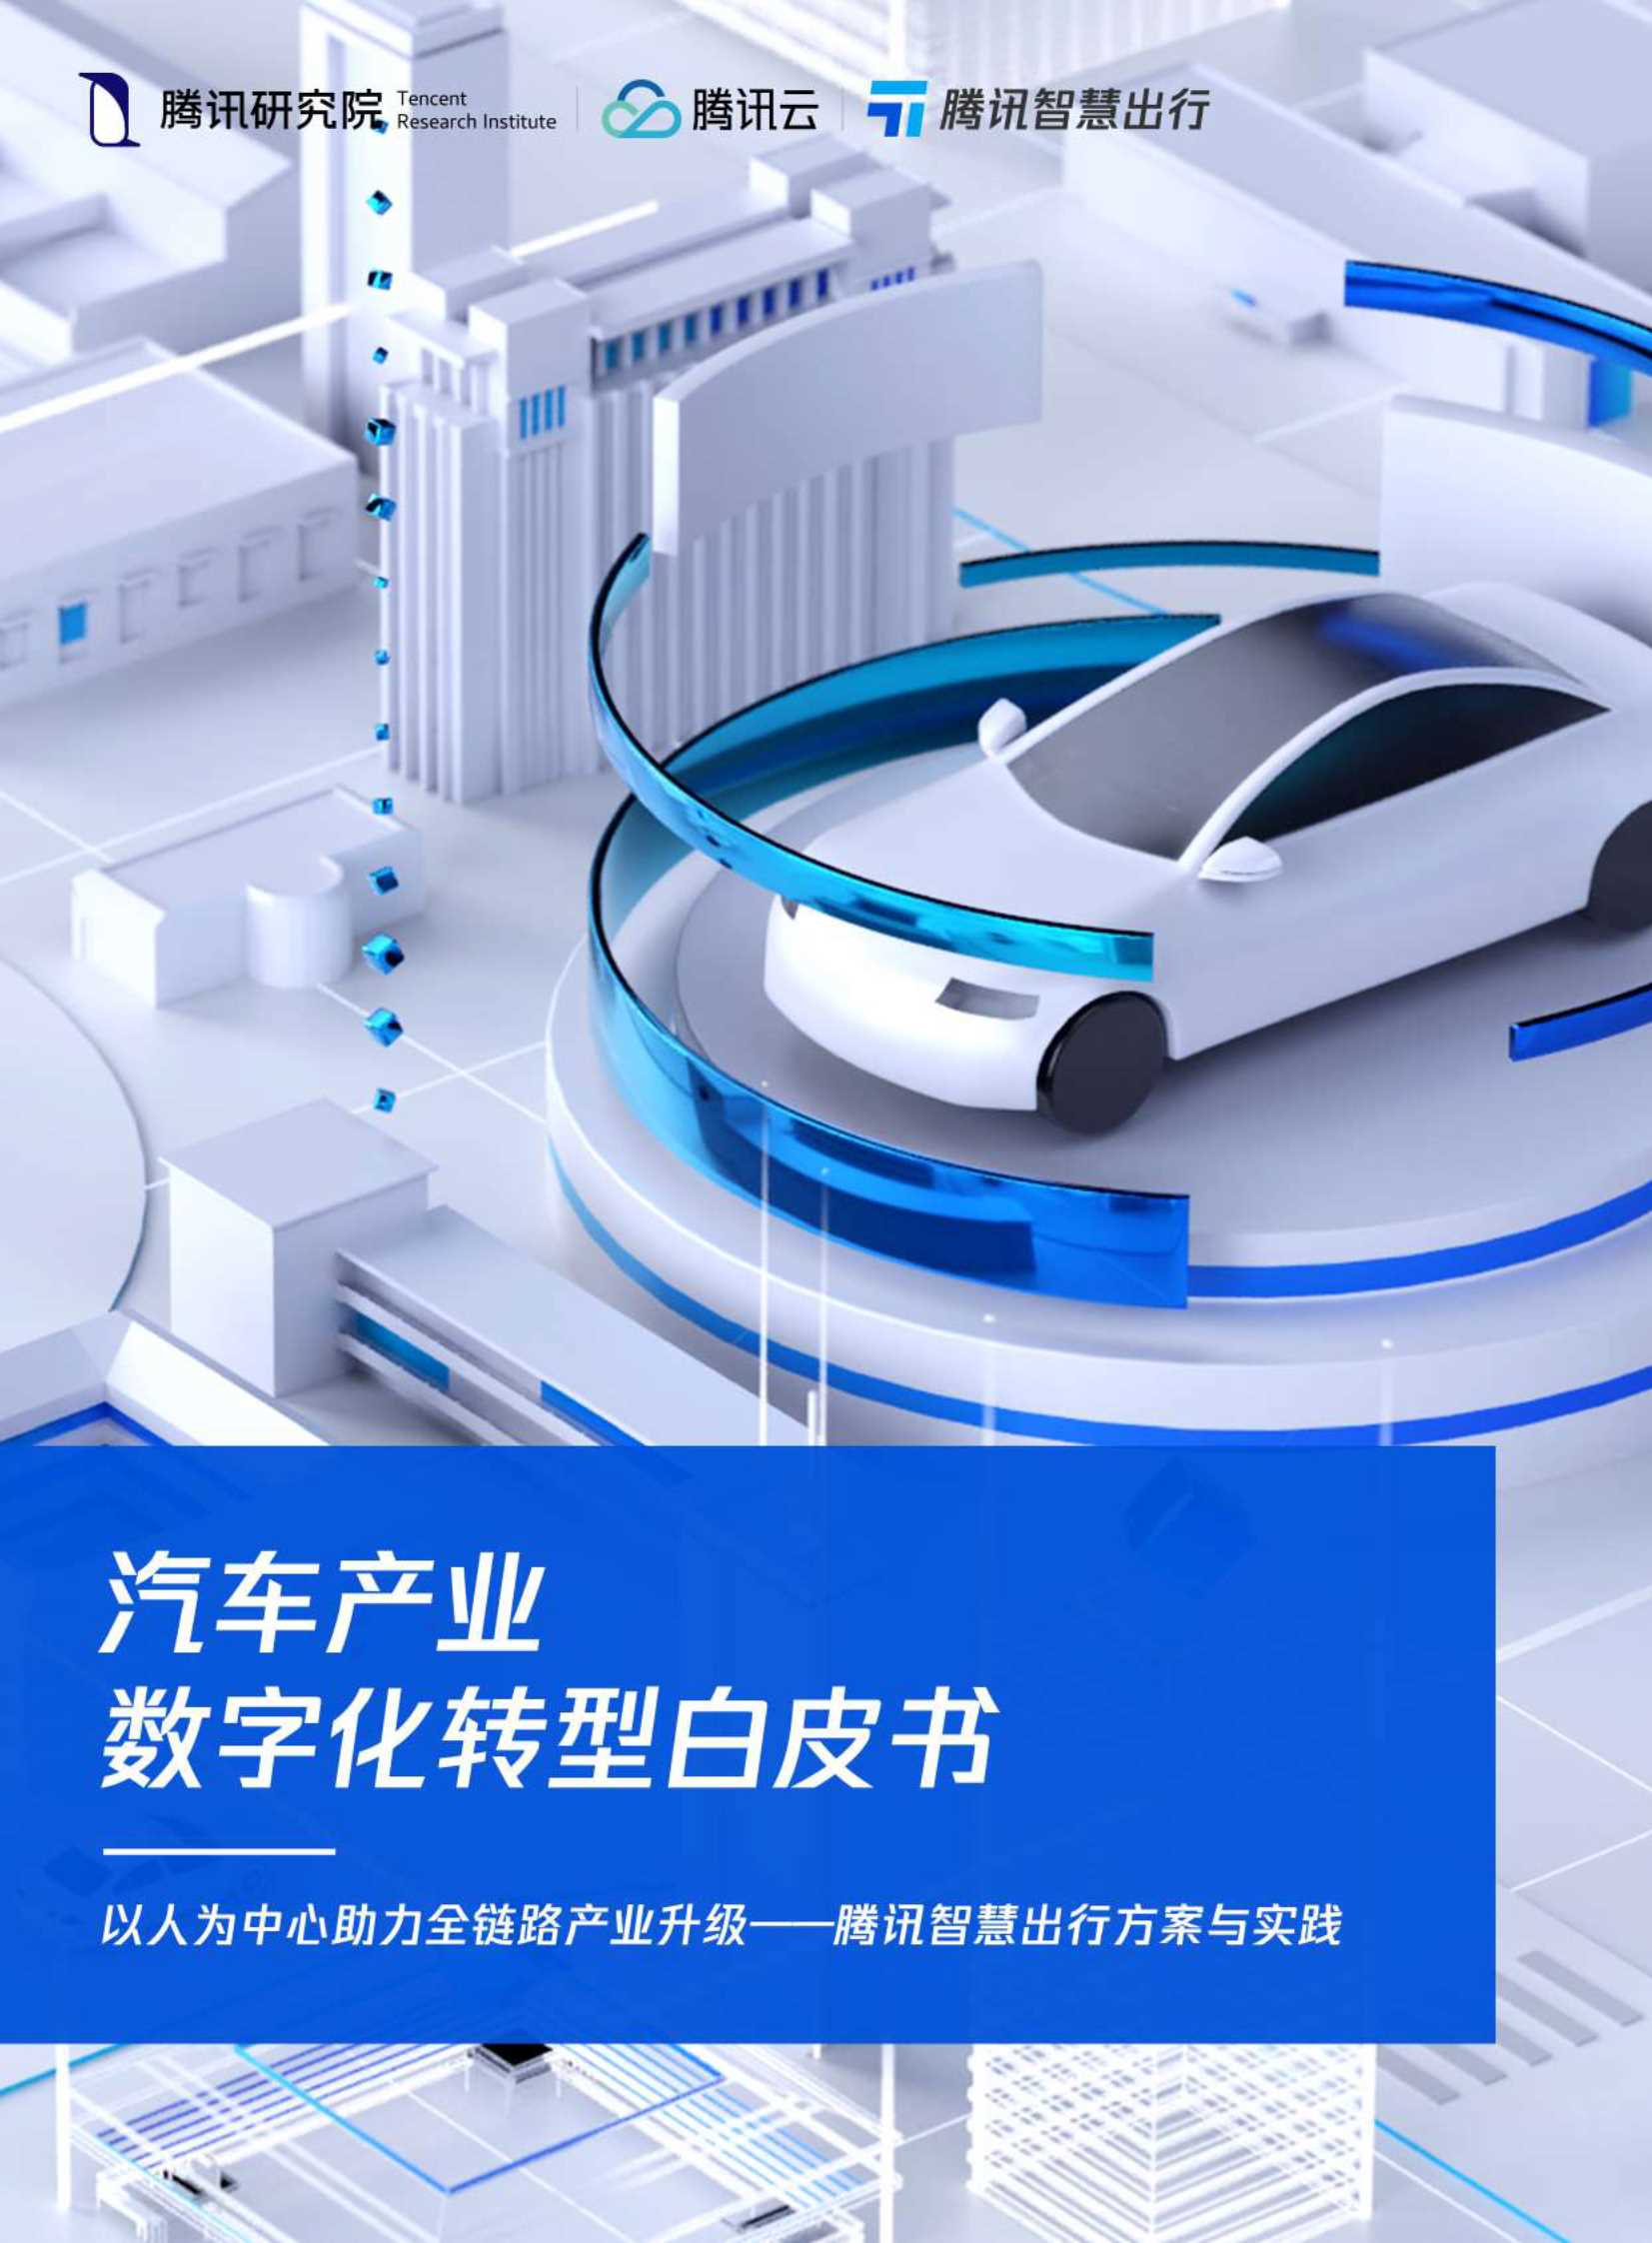 腾讯-汽车产业数字化转型白皮书-2021.11-49页